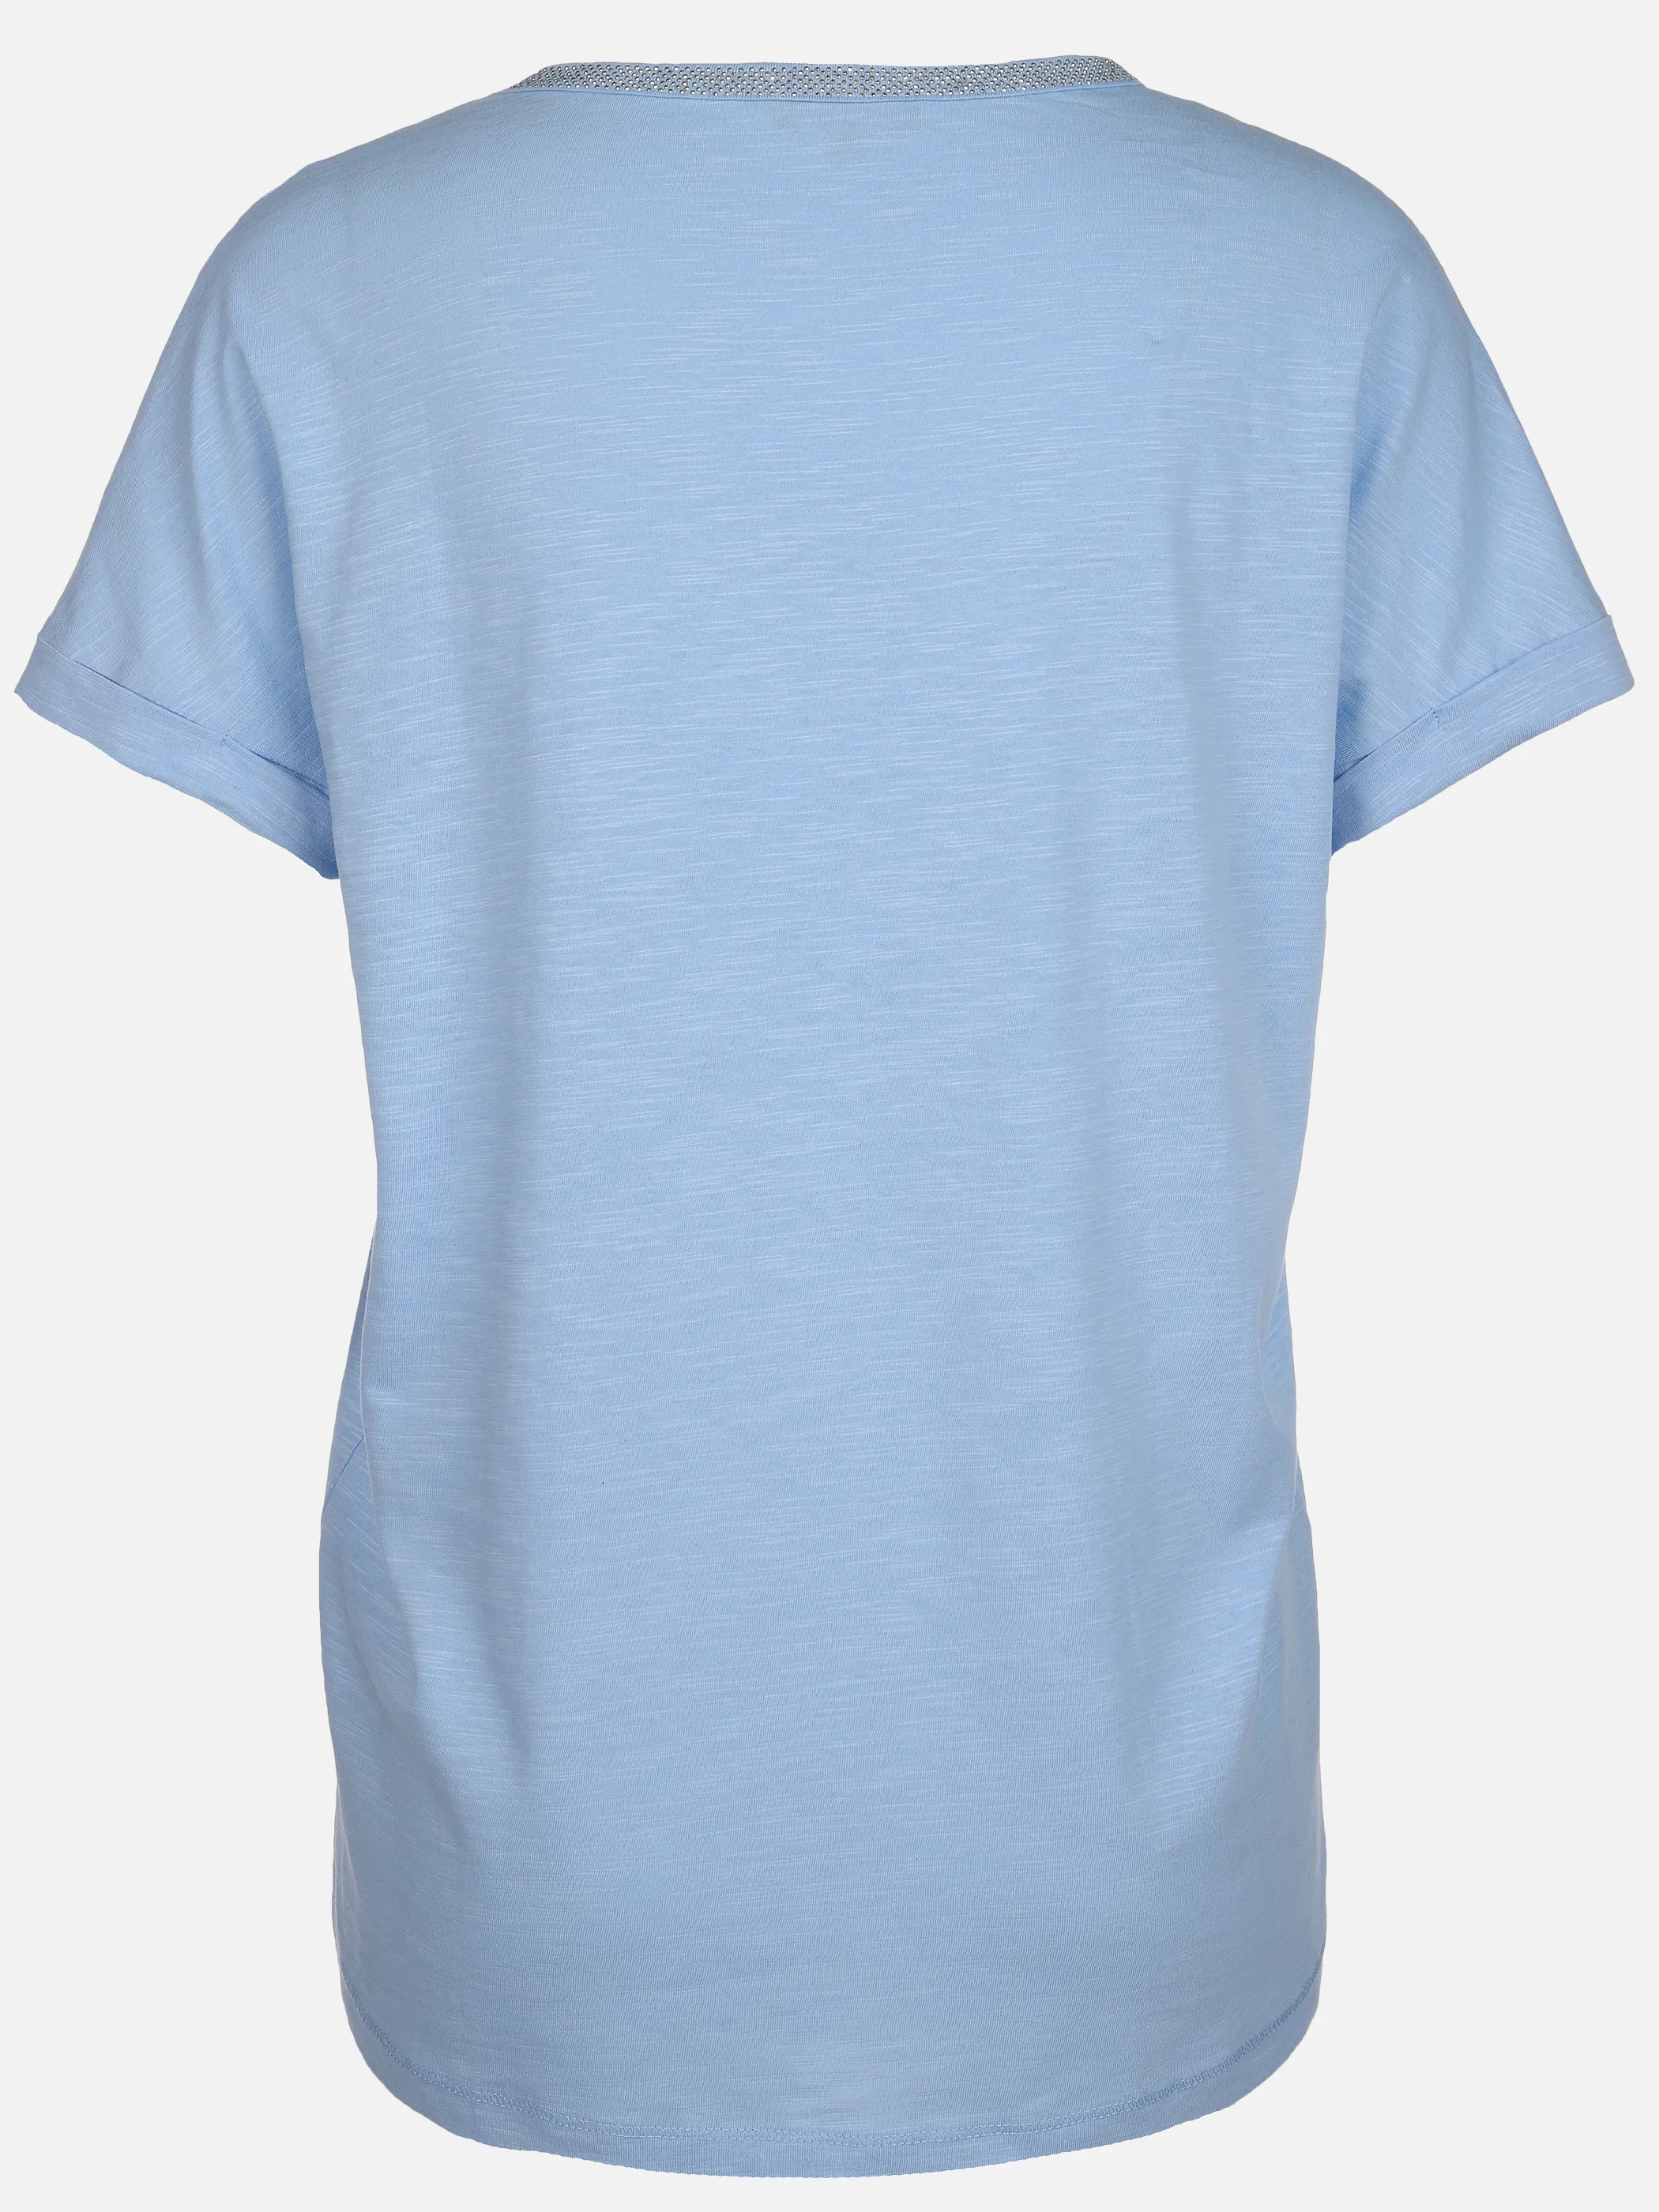 Sure Da-T-Shirt m. Nietendeko Blau 890103 CLOUDBLUE 2